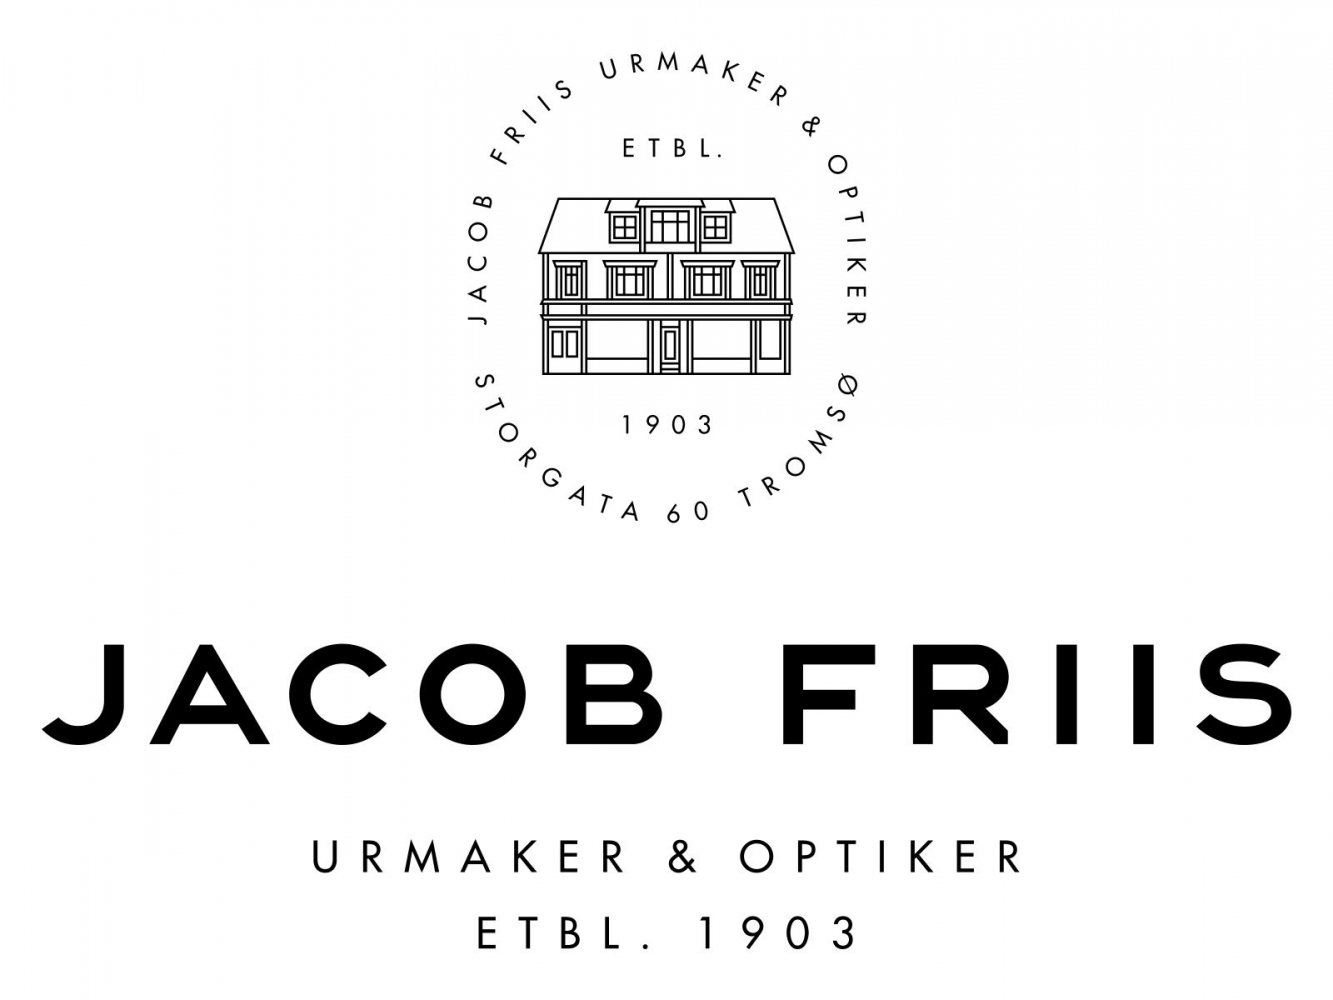 Jacob Friis urmaker og optiker